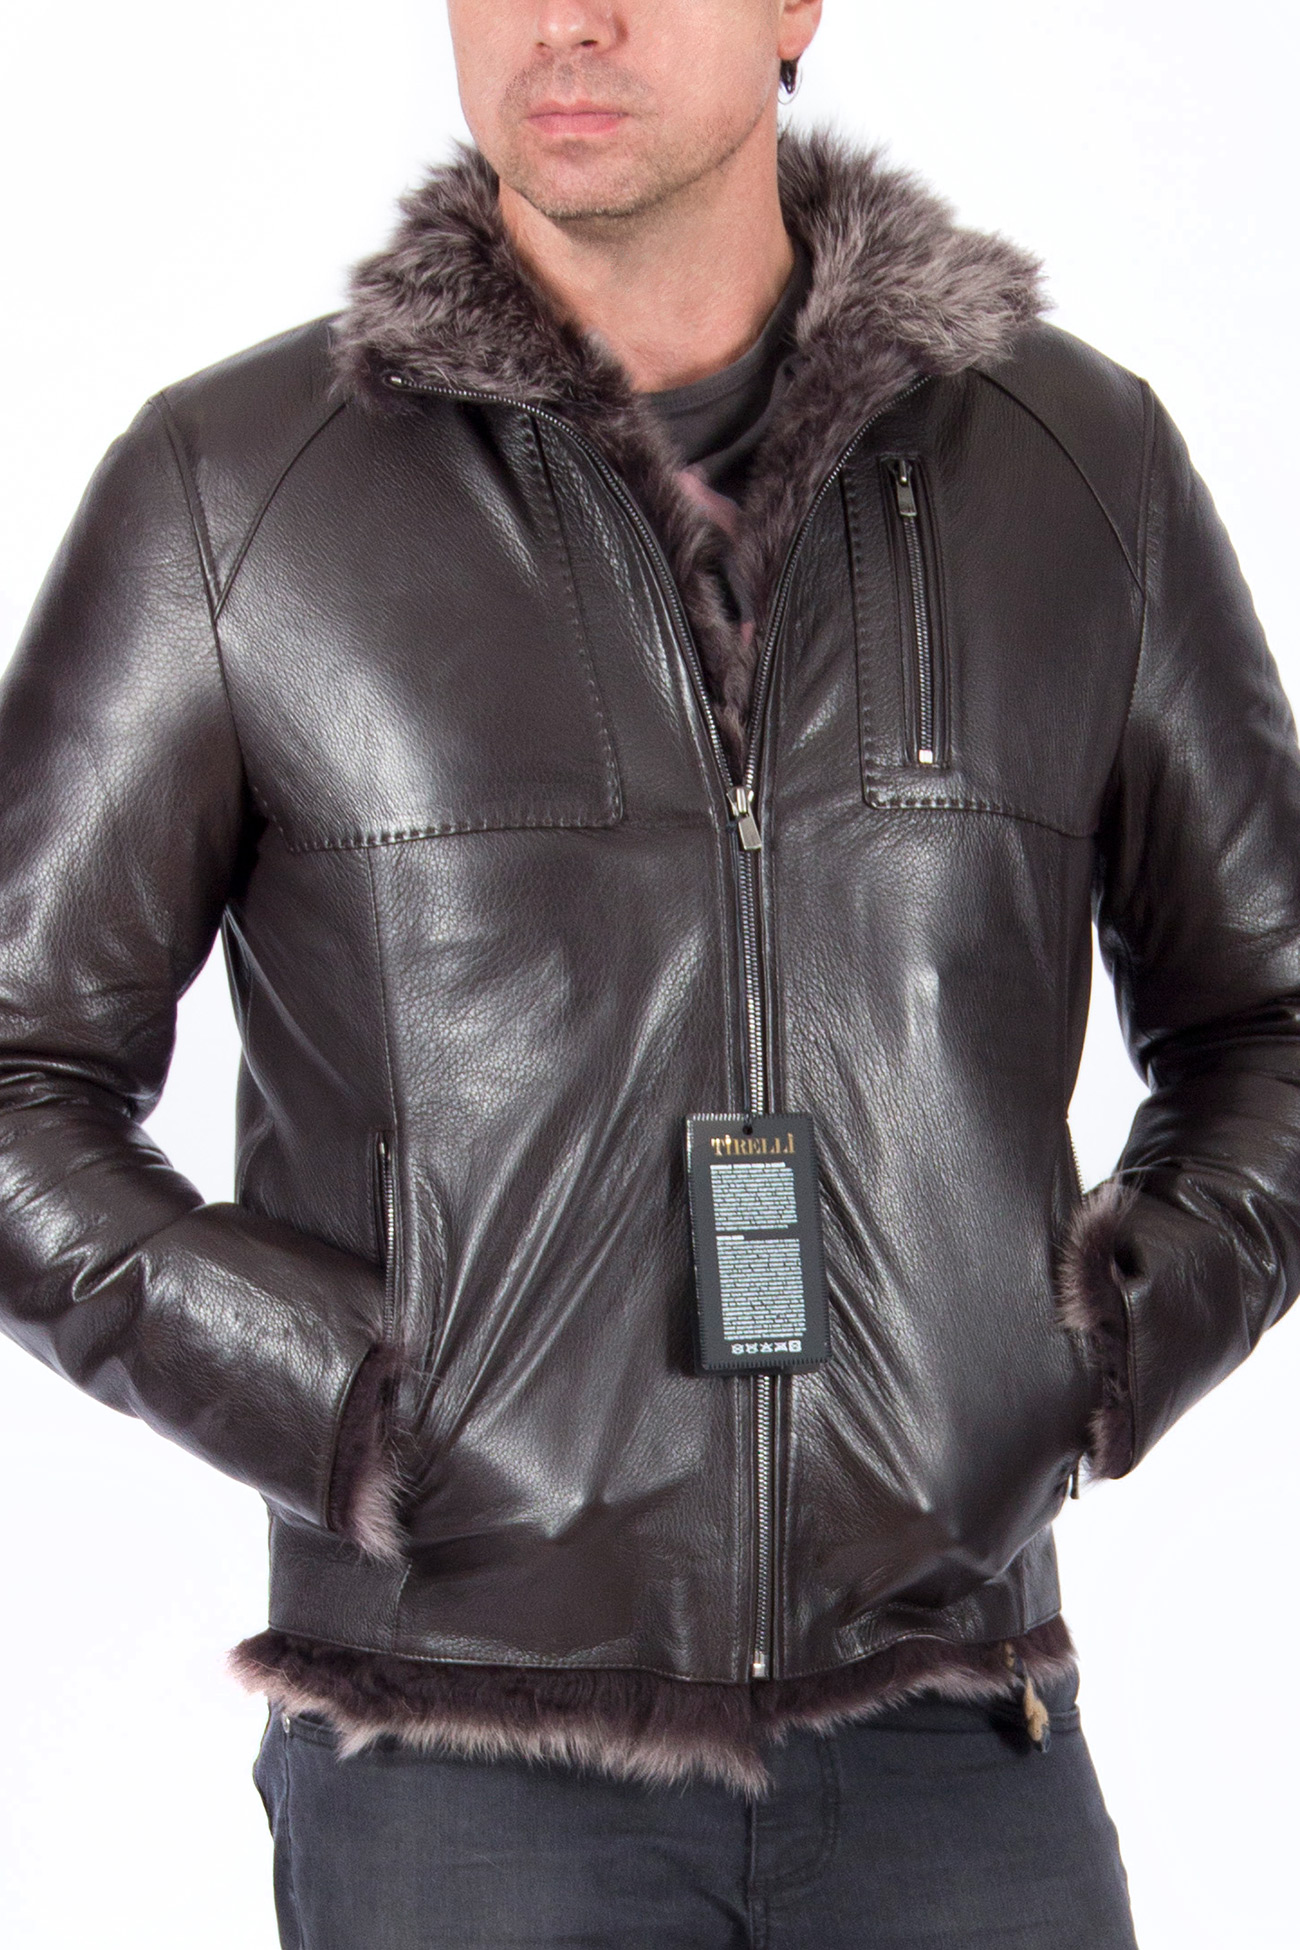 Зимняя кожаная куртка мужская с натуральным мехом ягненка купить в Москве